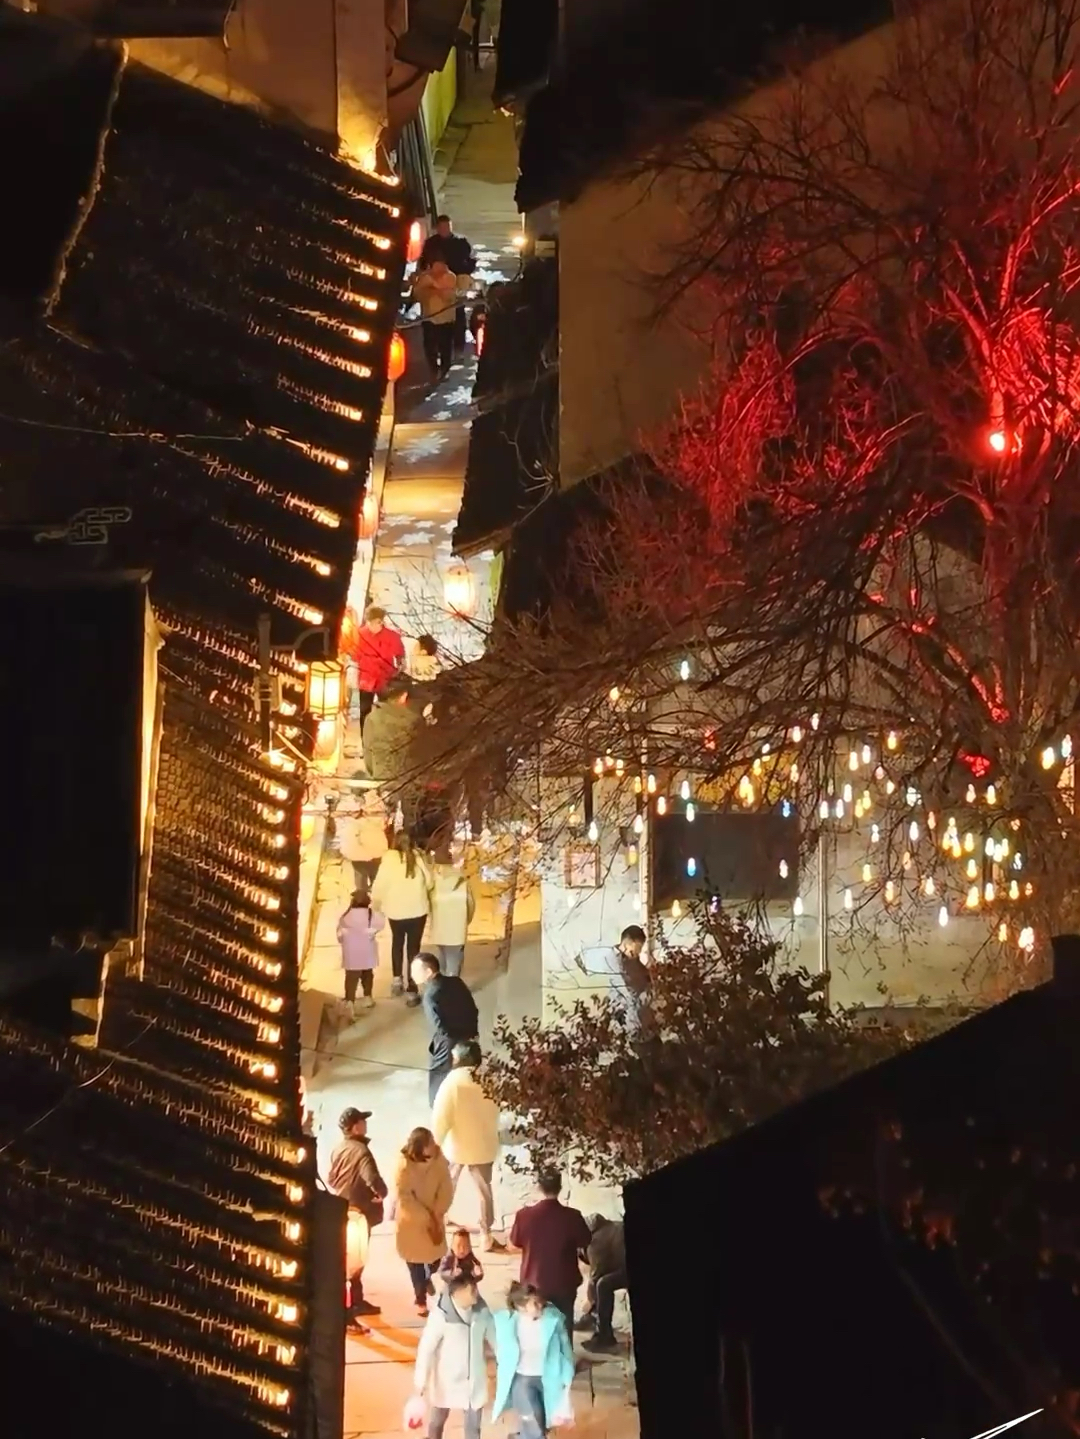 千灯古镇位于江苏省昆山市，是一座有2500多年历史的古镇1。其夜景非常美丽，每周五、周六晚上七点开始